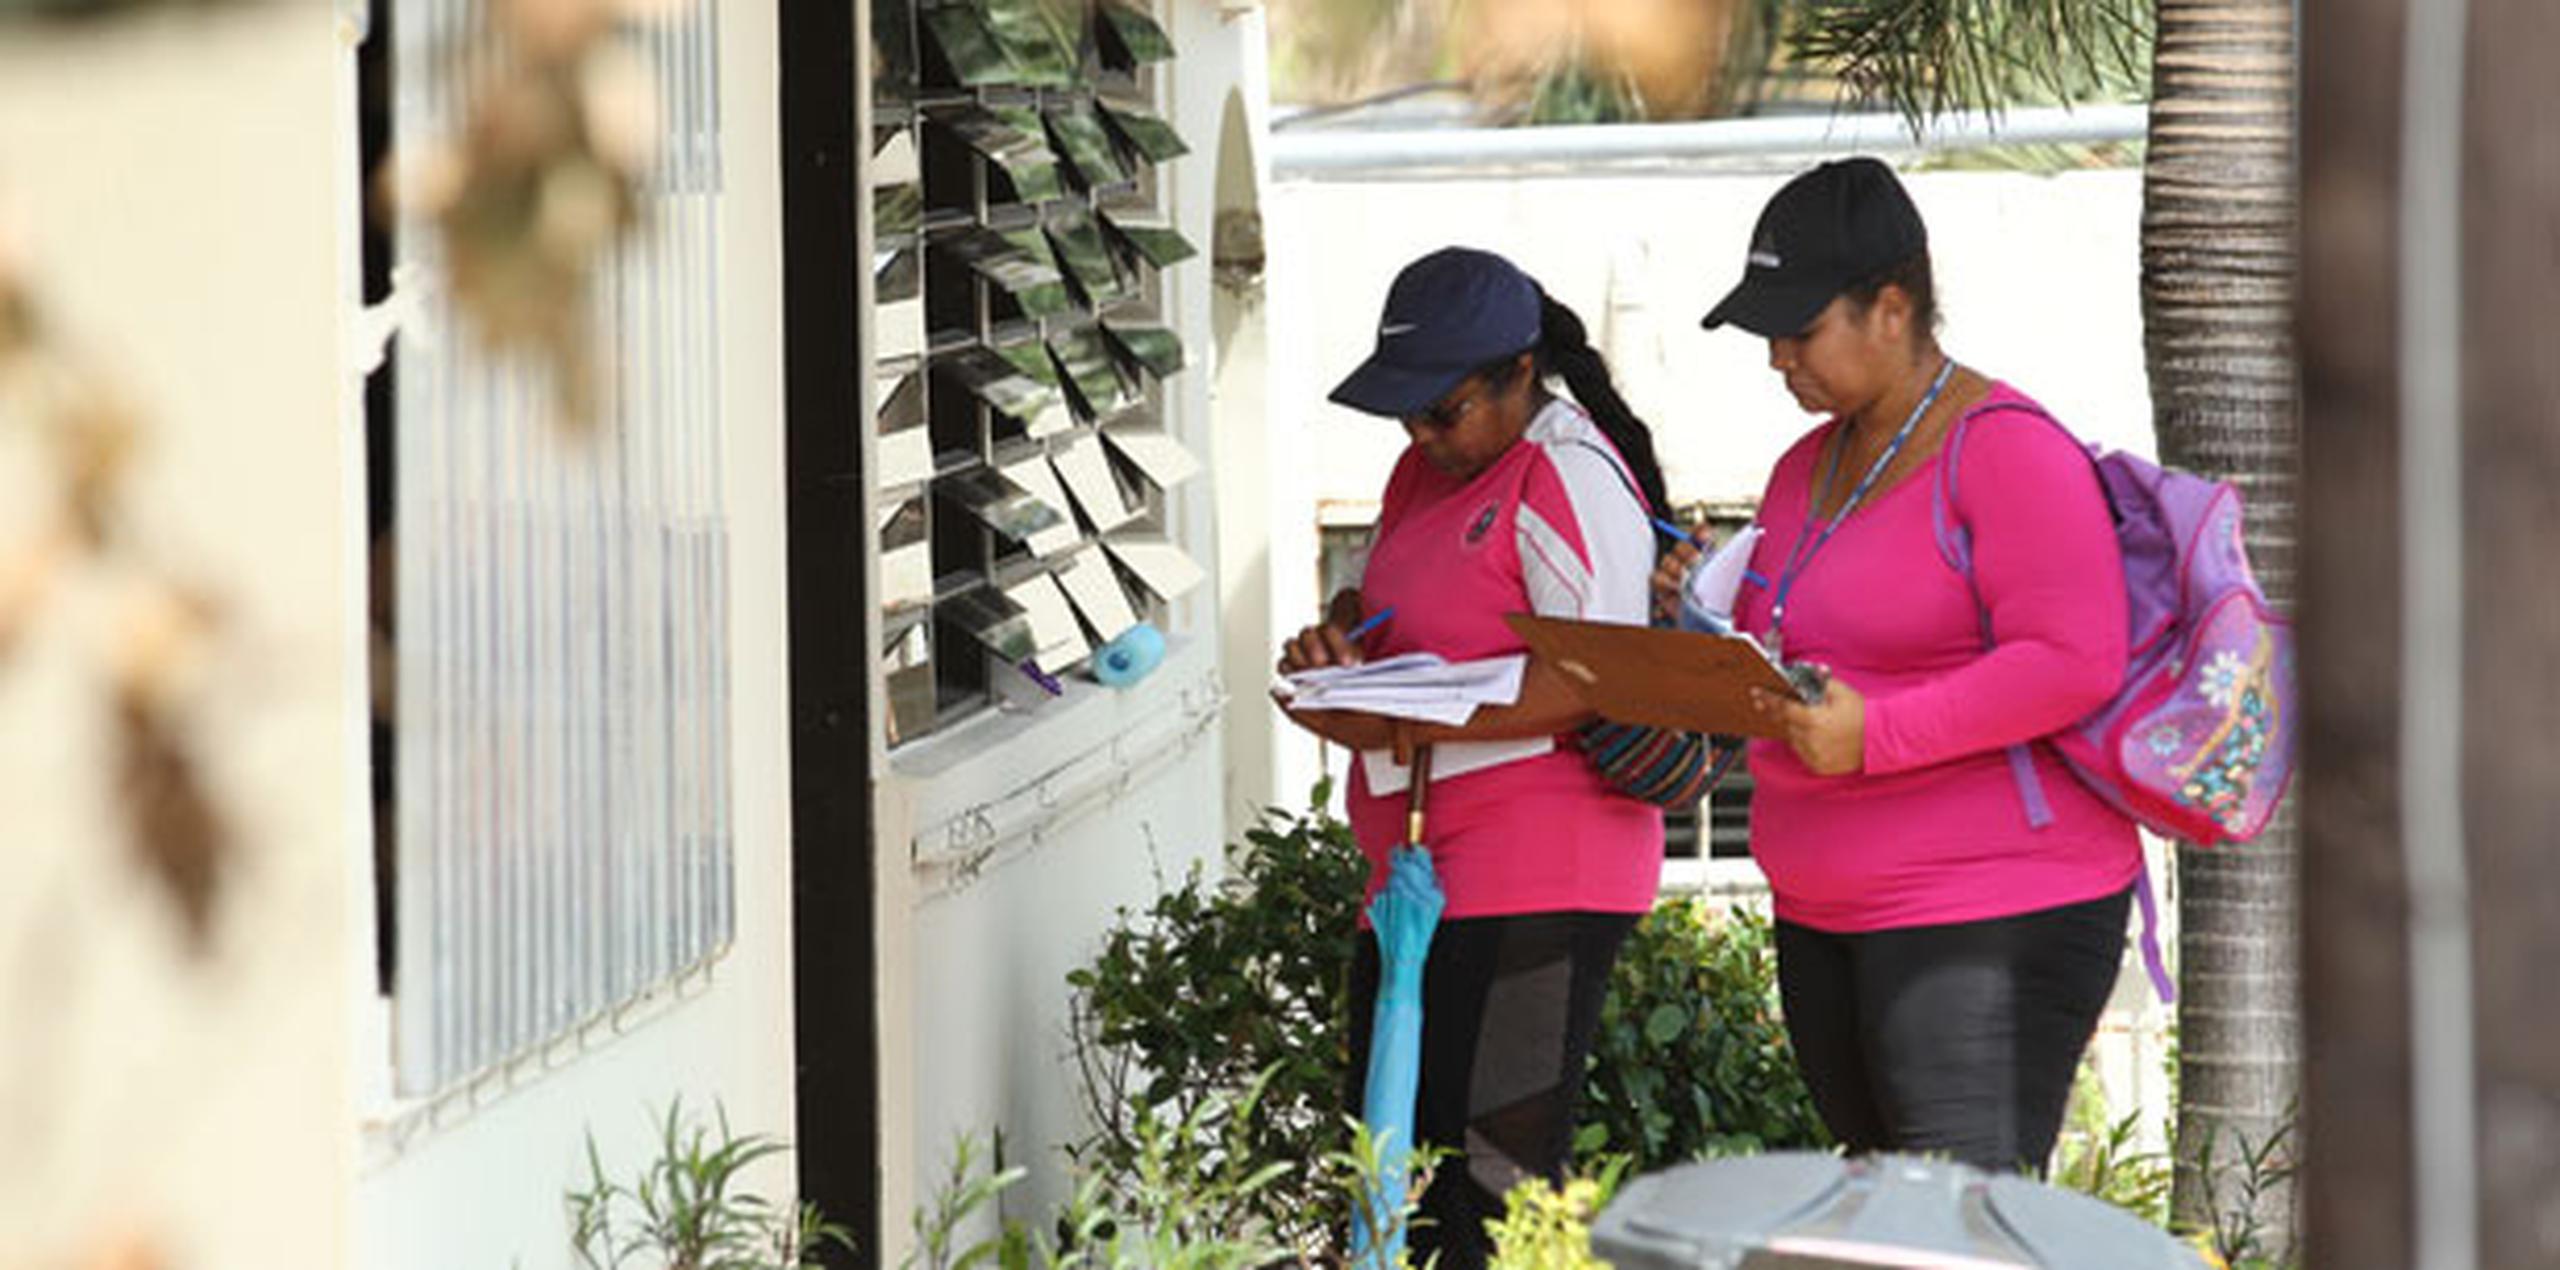 Mientras, personal del municipio de Guaynabo visita las comunidades personalmente para realizar un censo sobre los daños. (alex.figueroa@gfrmedia.com)